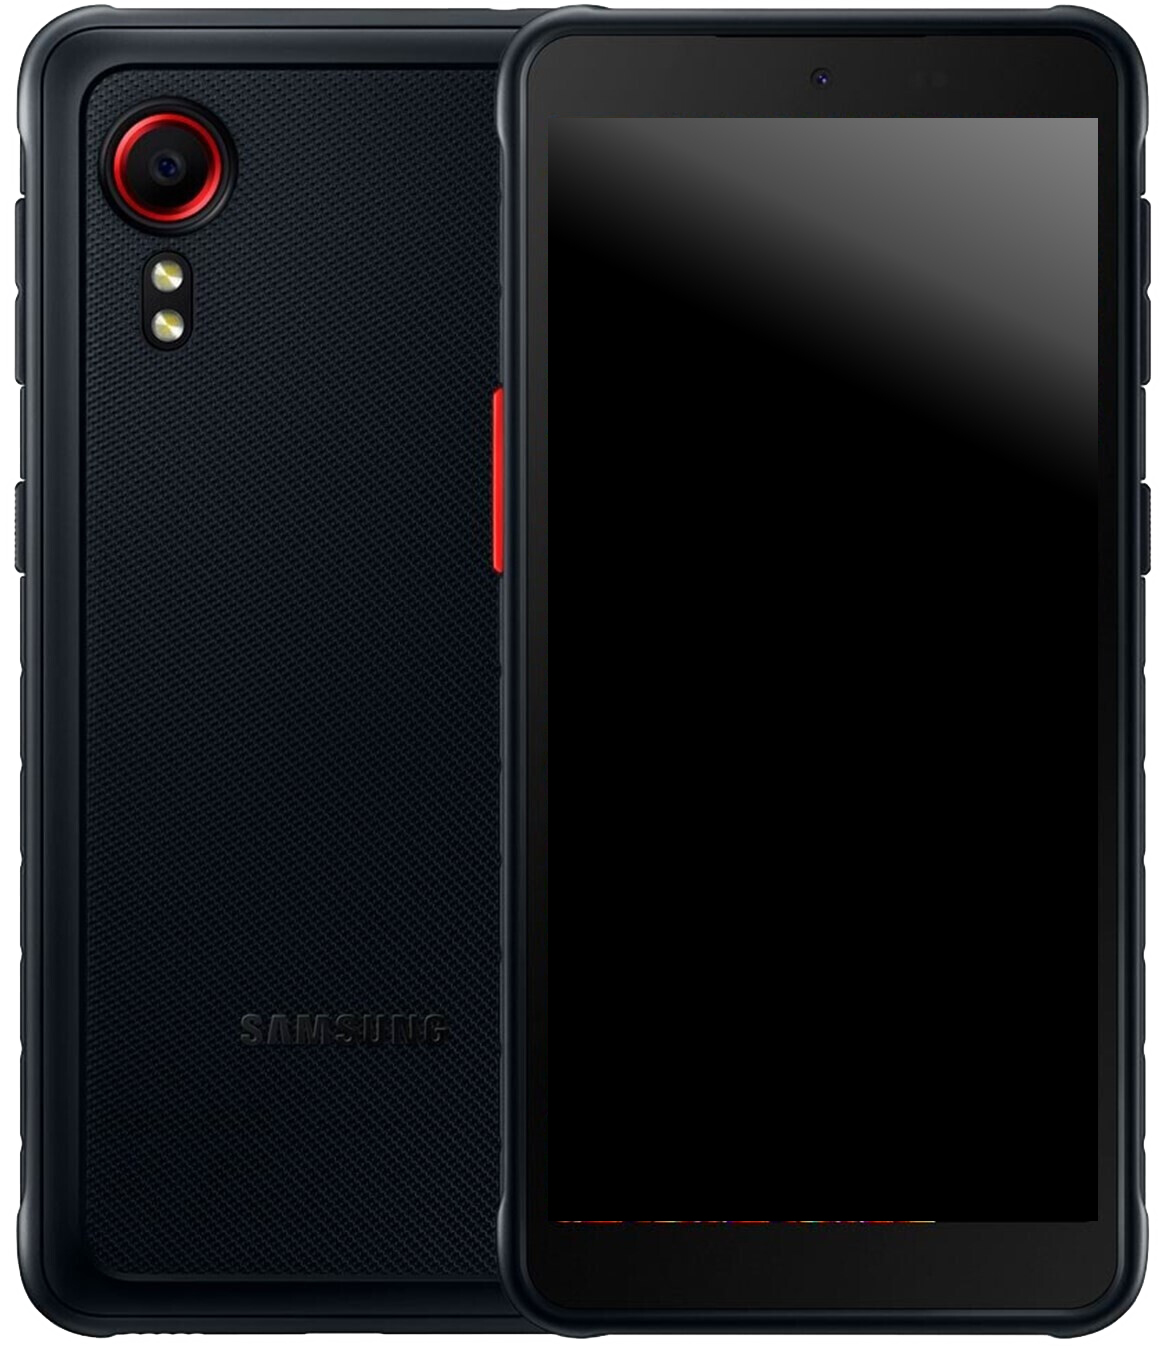 Samsung Galaxy Xcover 5 Dual-SIM schwarz - Ohne Vertrag